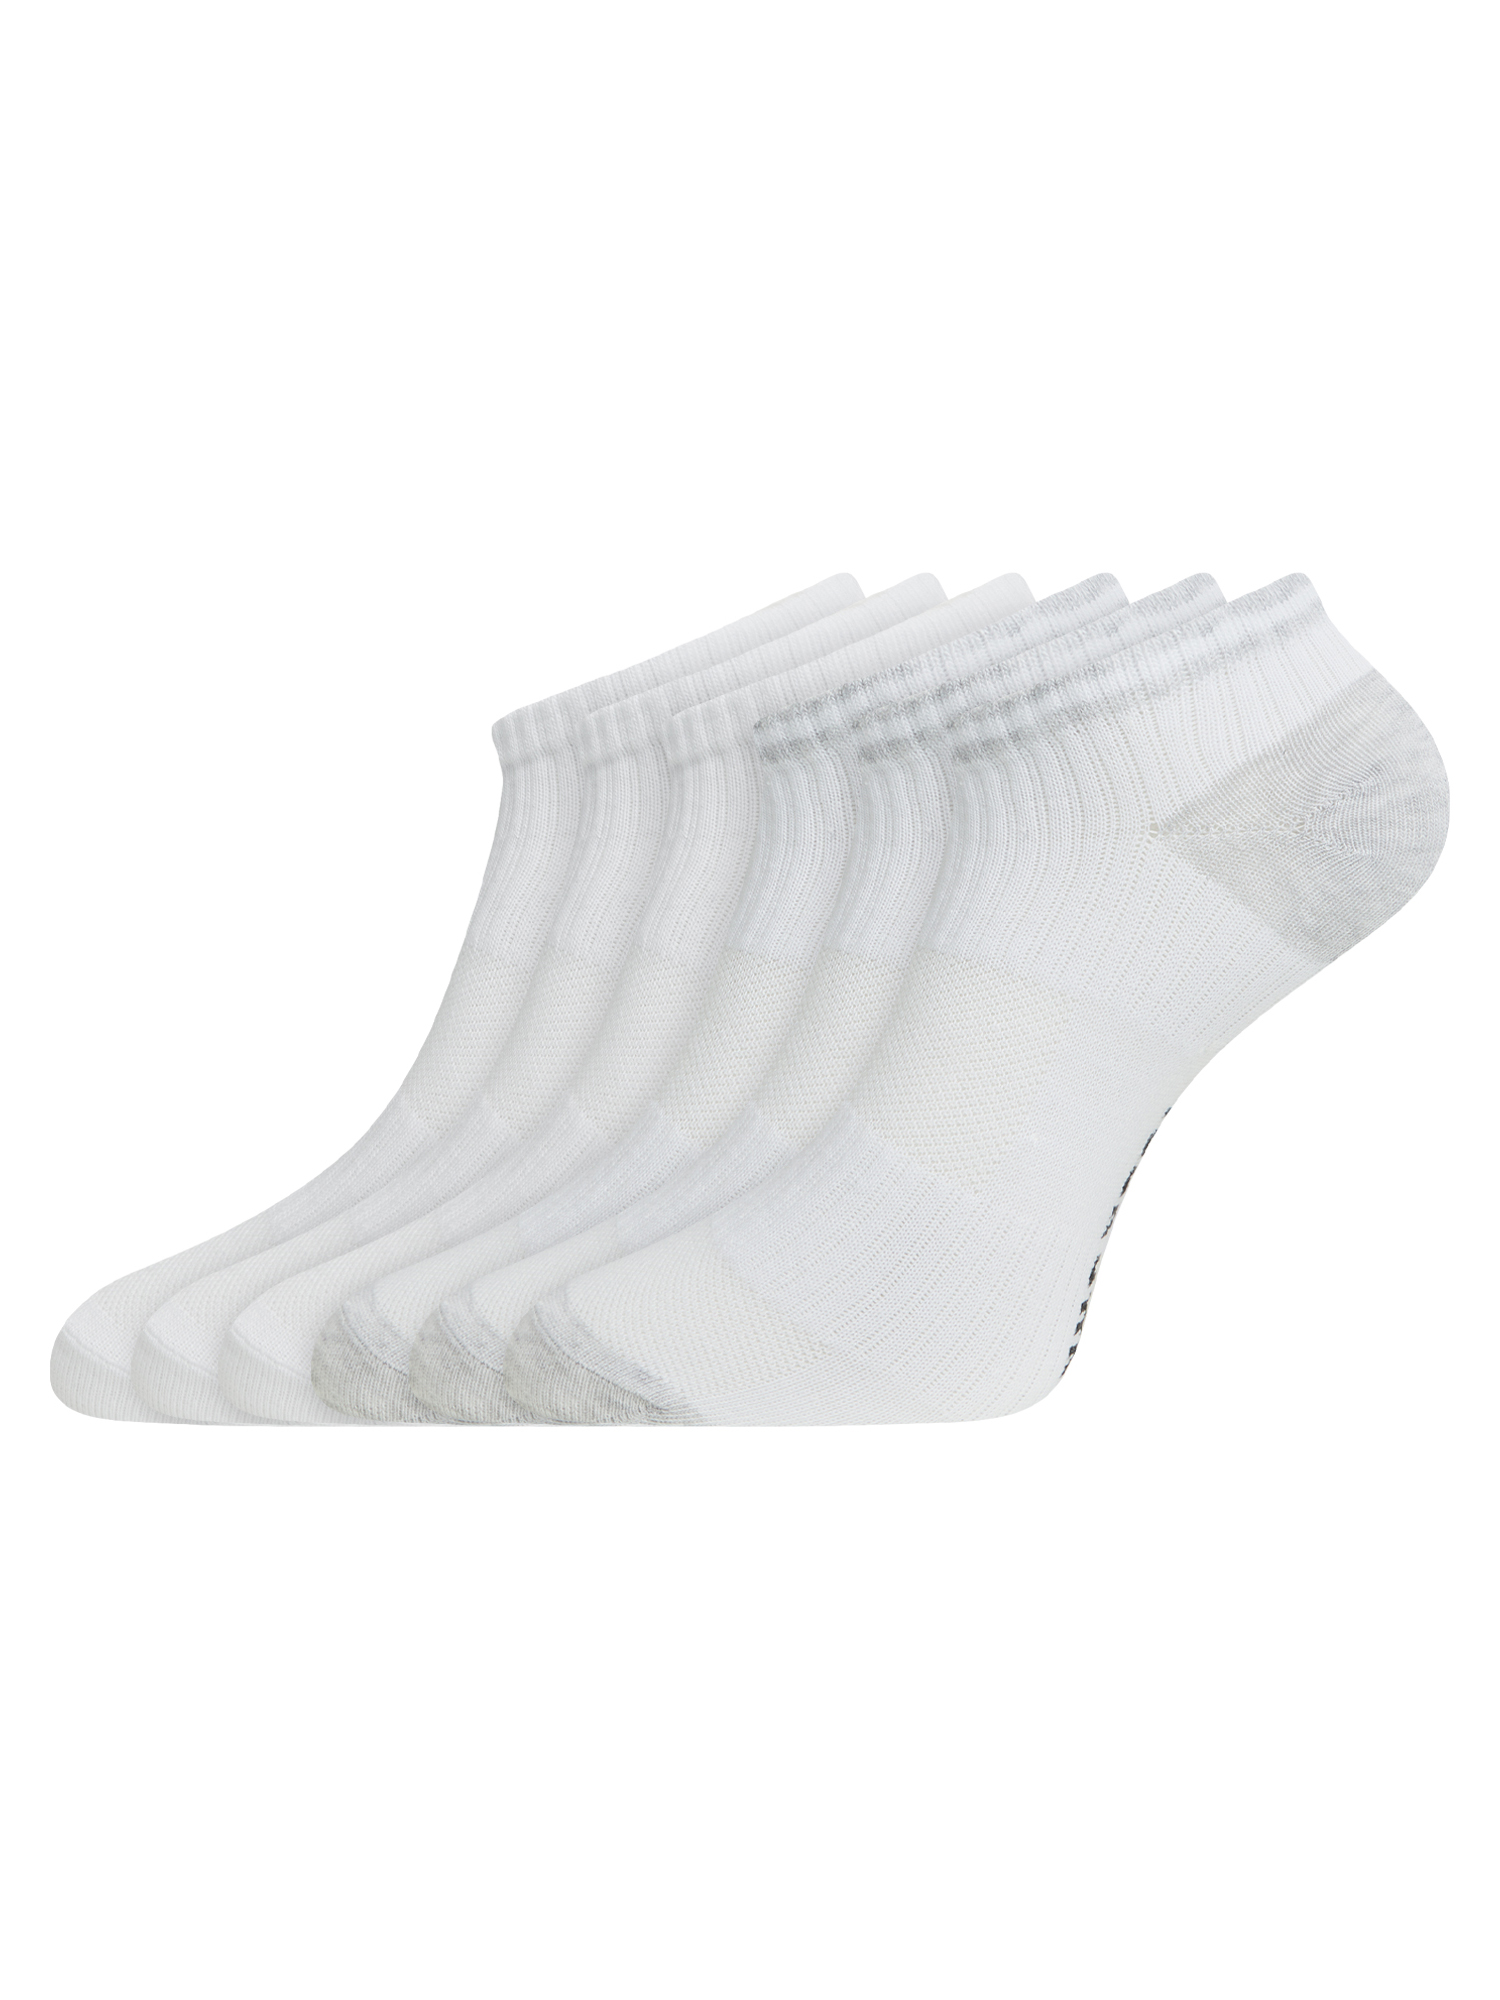 Комплект носков женских oodji 57102610T6 белых 38-40